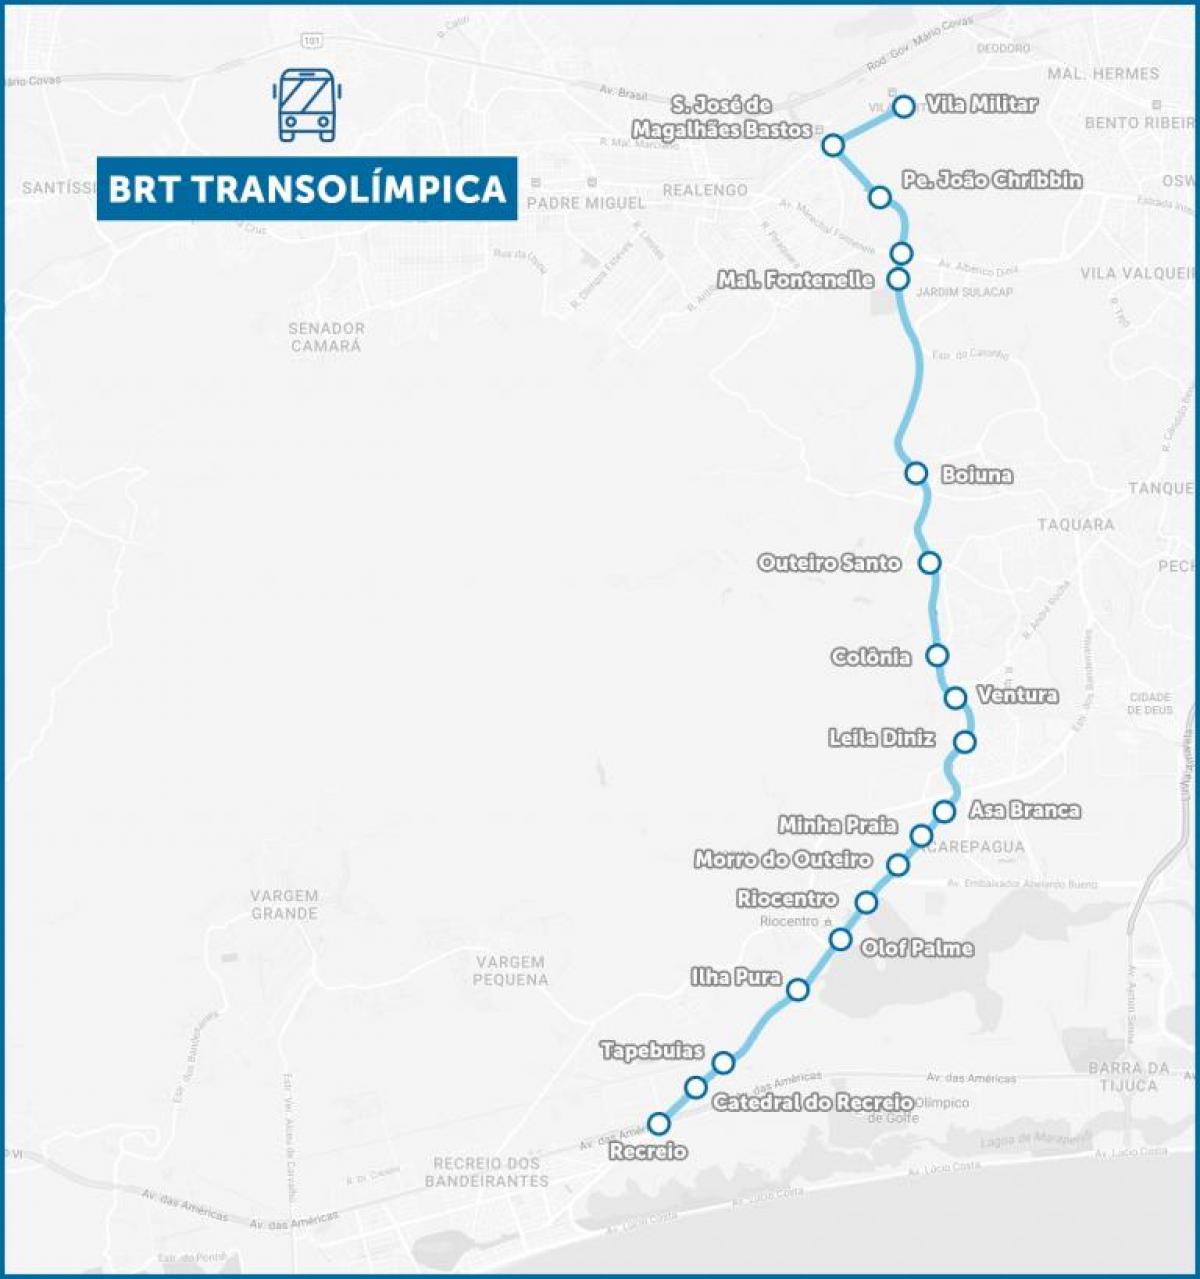 Zemljevid BRT TransOlimpica